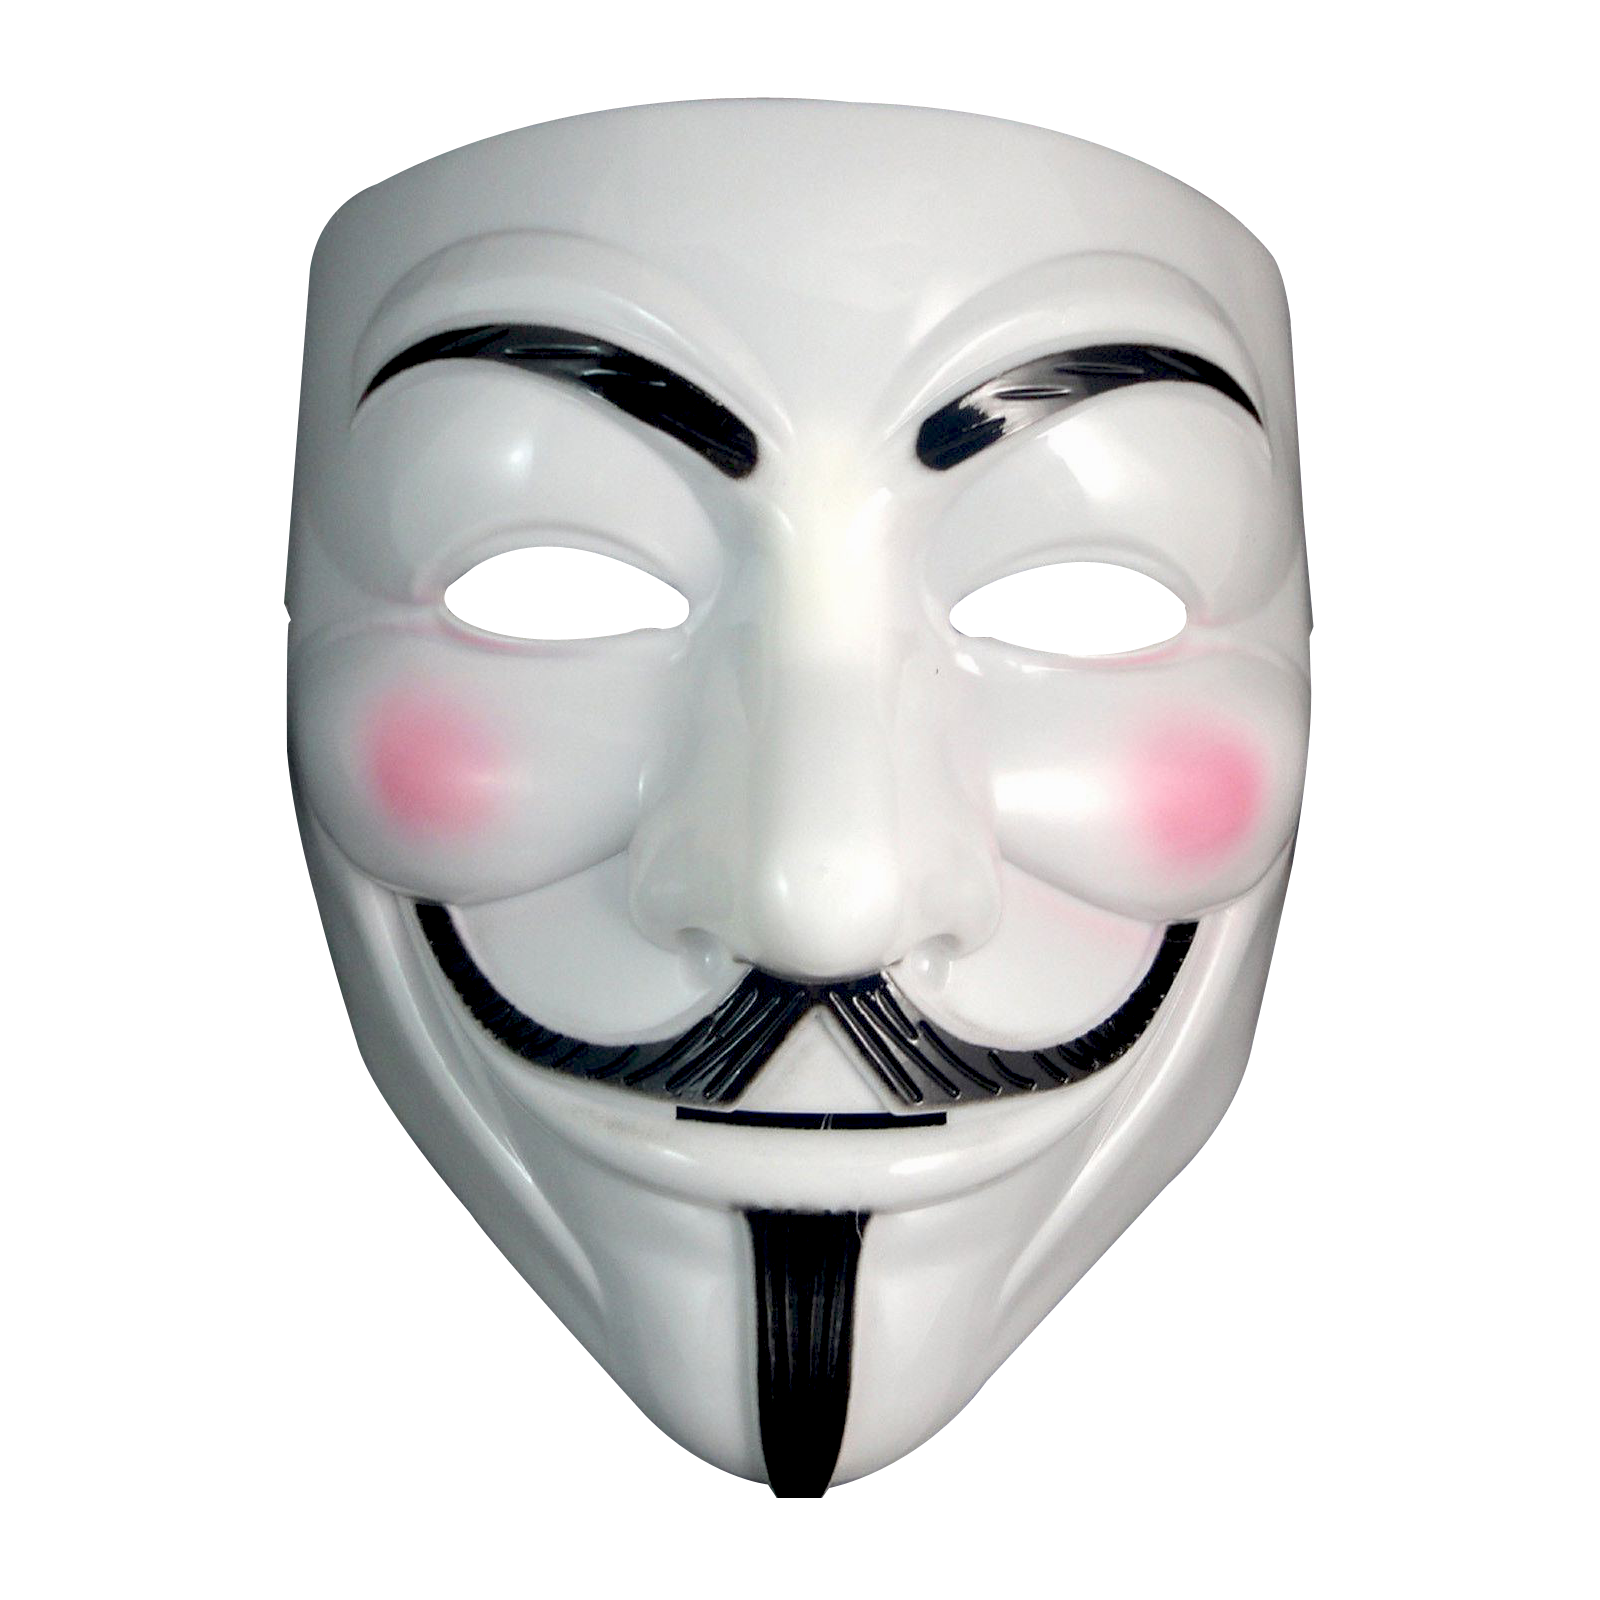 匿名マスク